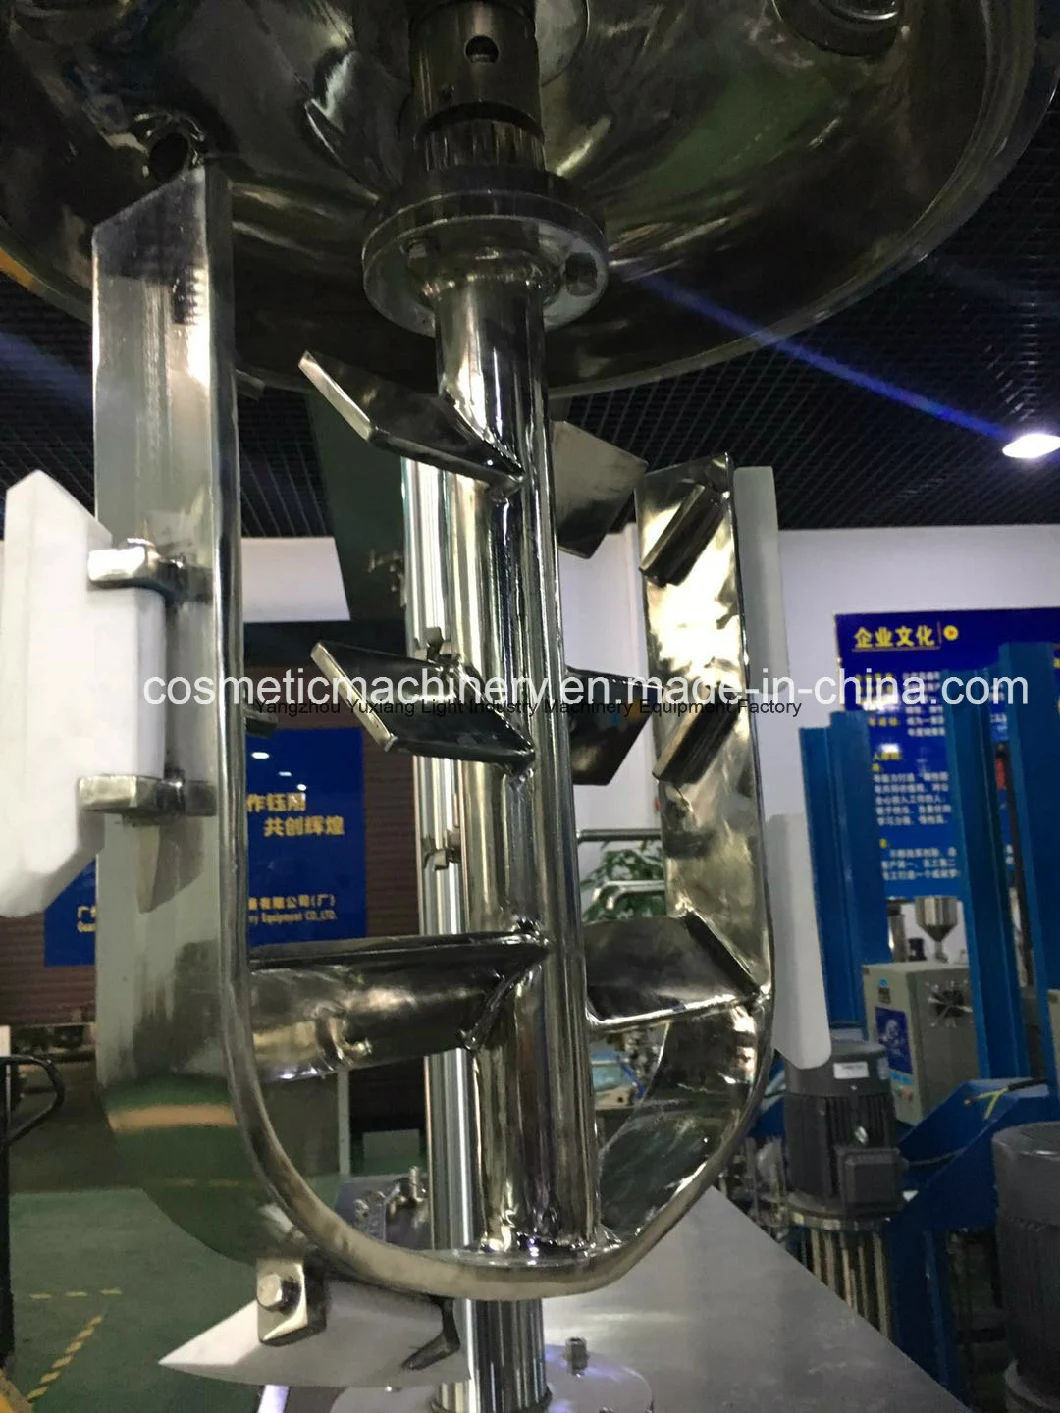 1000LTR Vacuum Emulsion Industrial Stirrer Tank Mixer Lube Oil Blending Plant